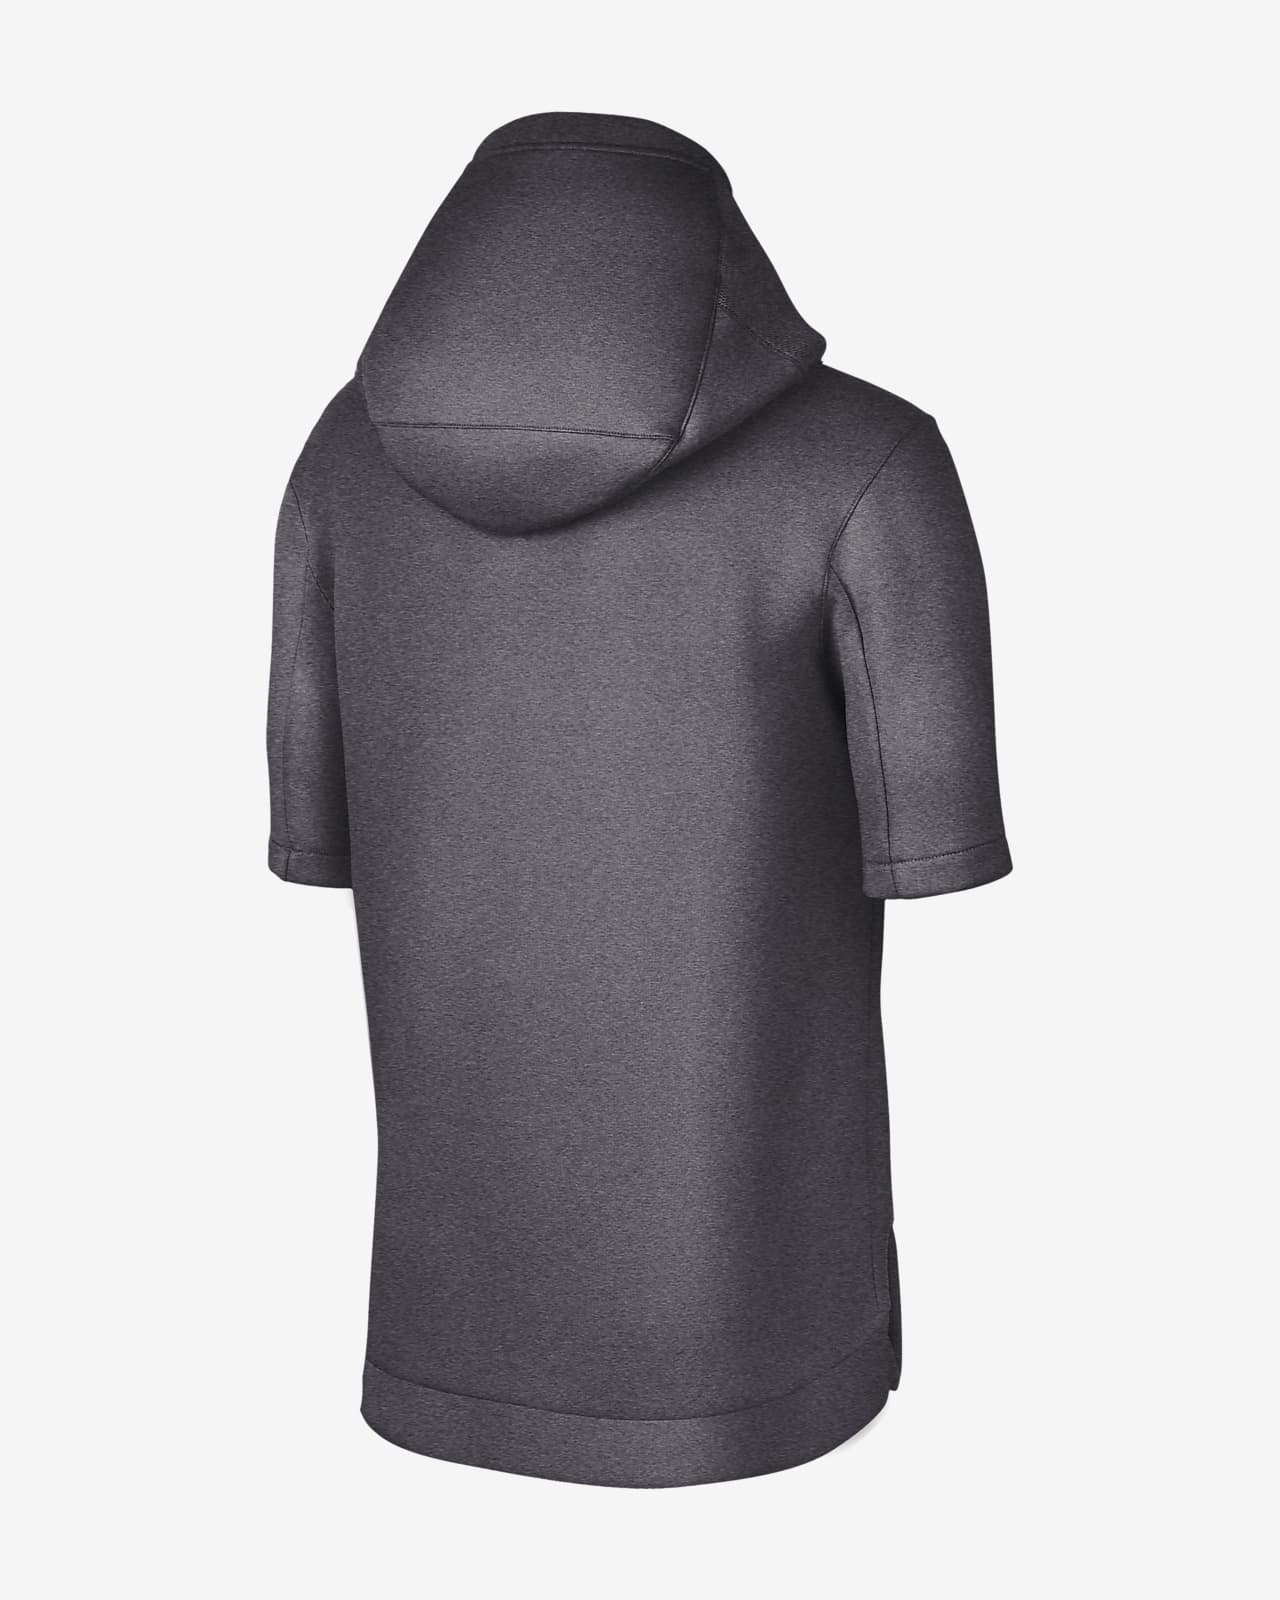 Men's Short-Sleeve Hoodie. Nike.com